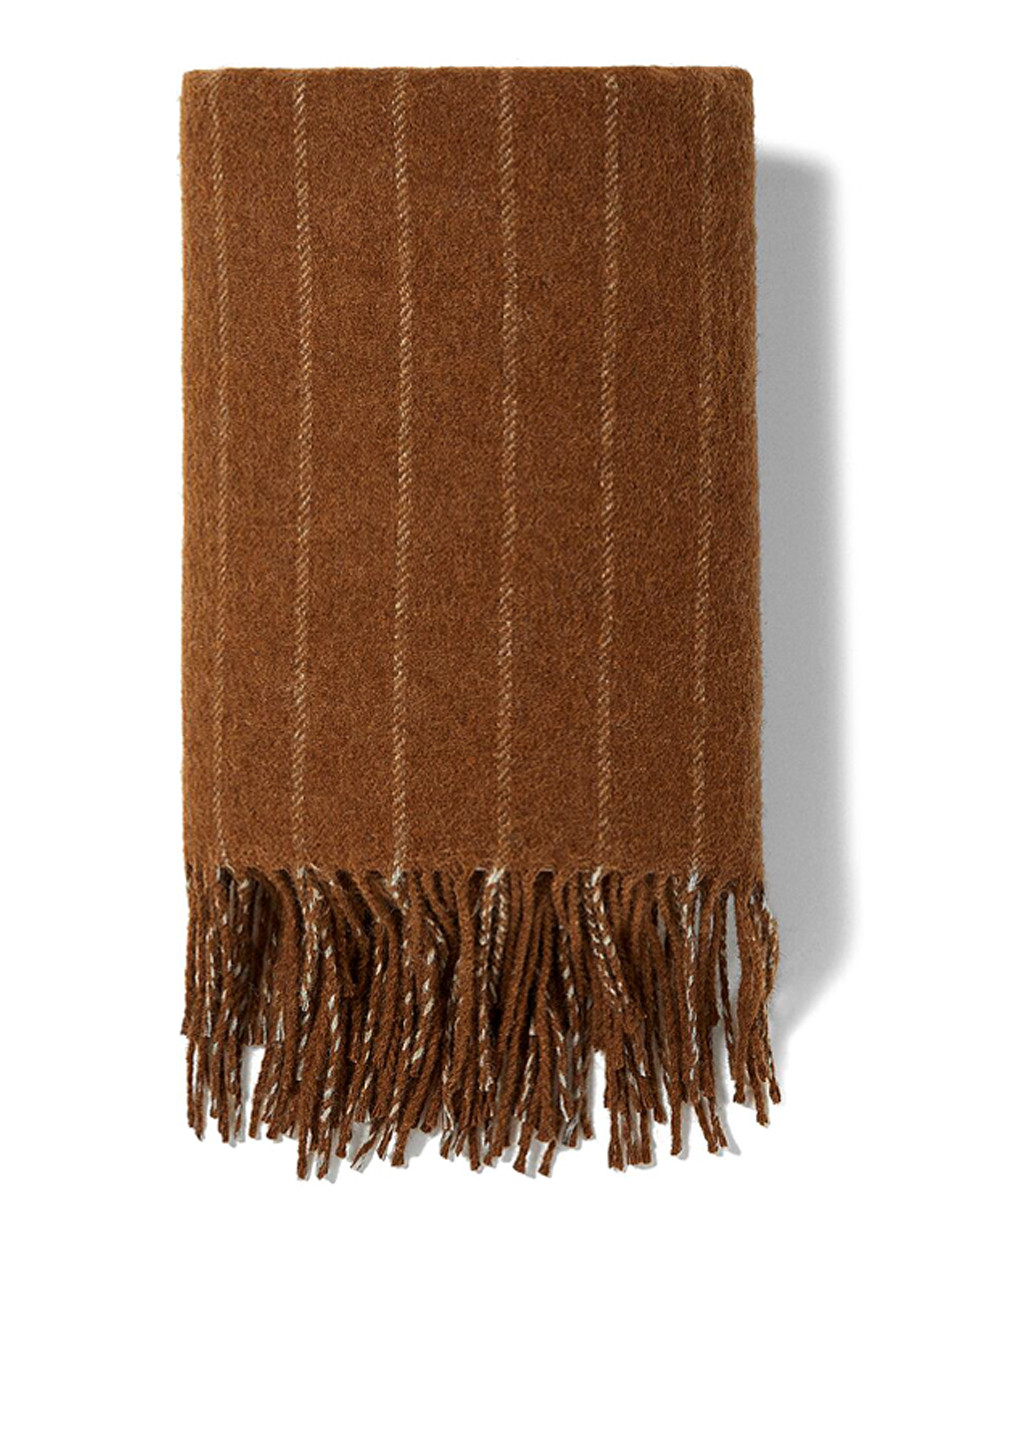 Шарф Zara полоска коричневый кэжуал полиэстер, шерсть